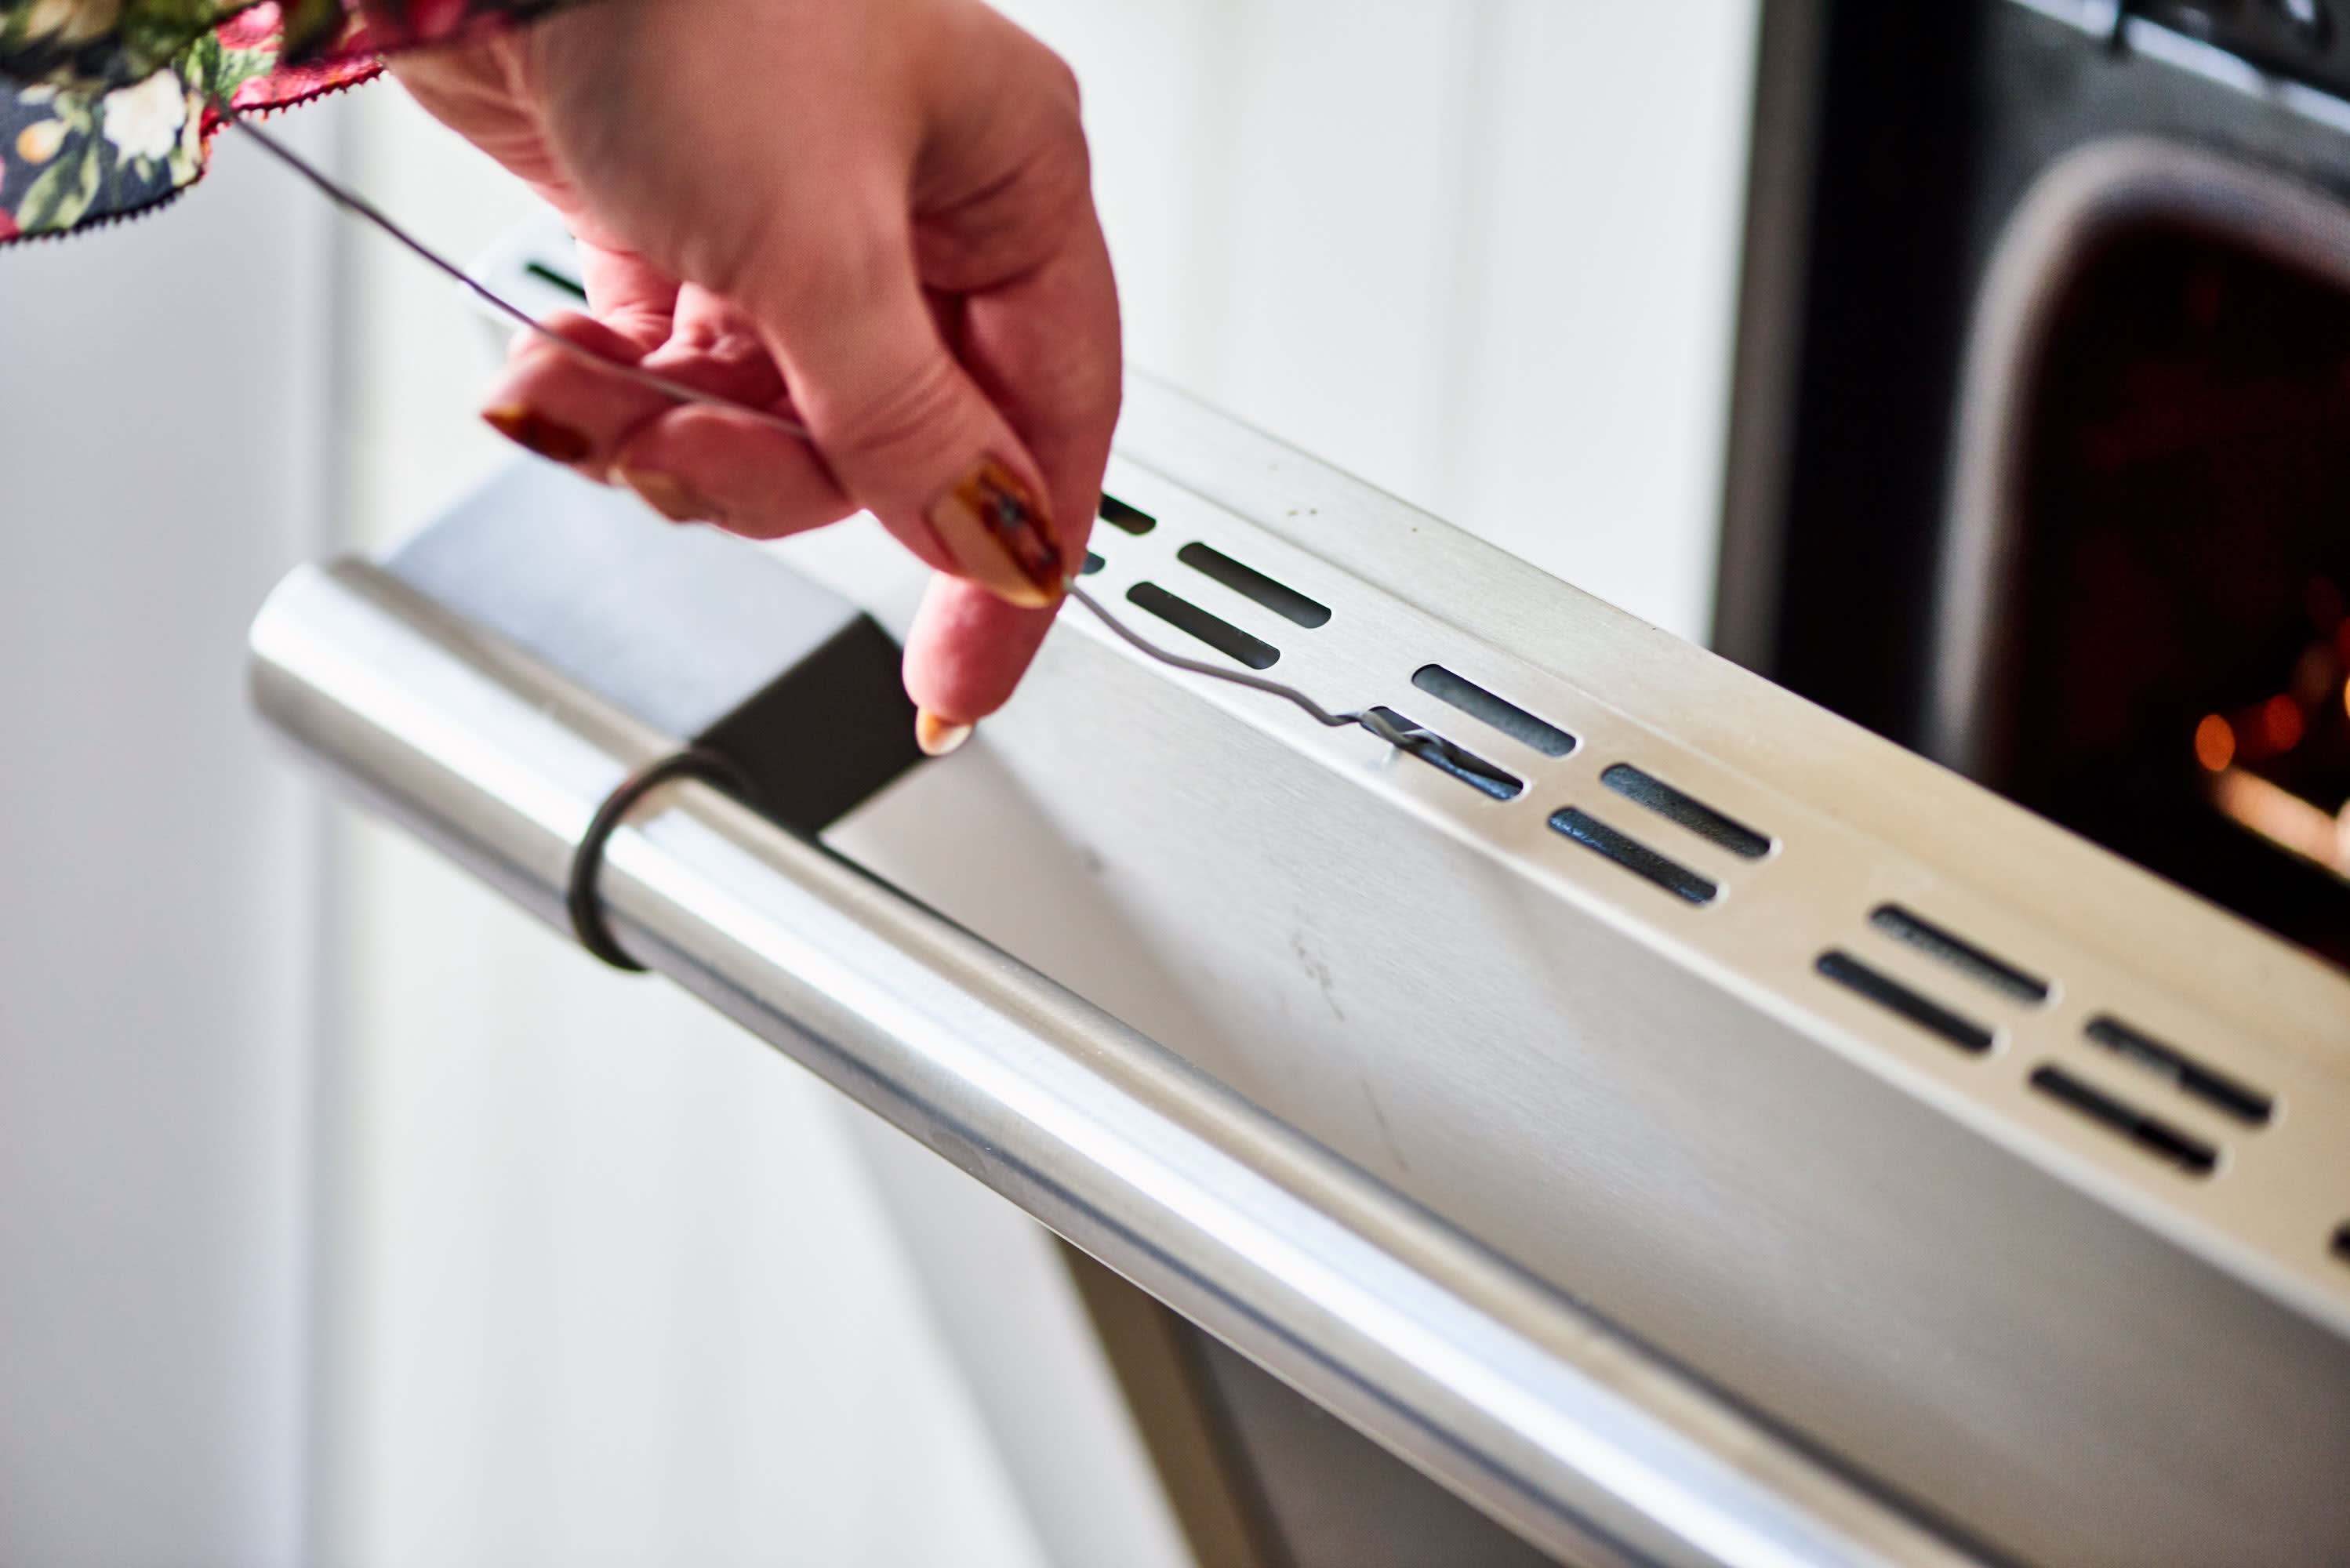 How to Clean a Glass Oven Door: 4 Ways to Clean Oven Doors